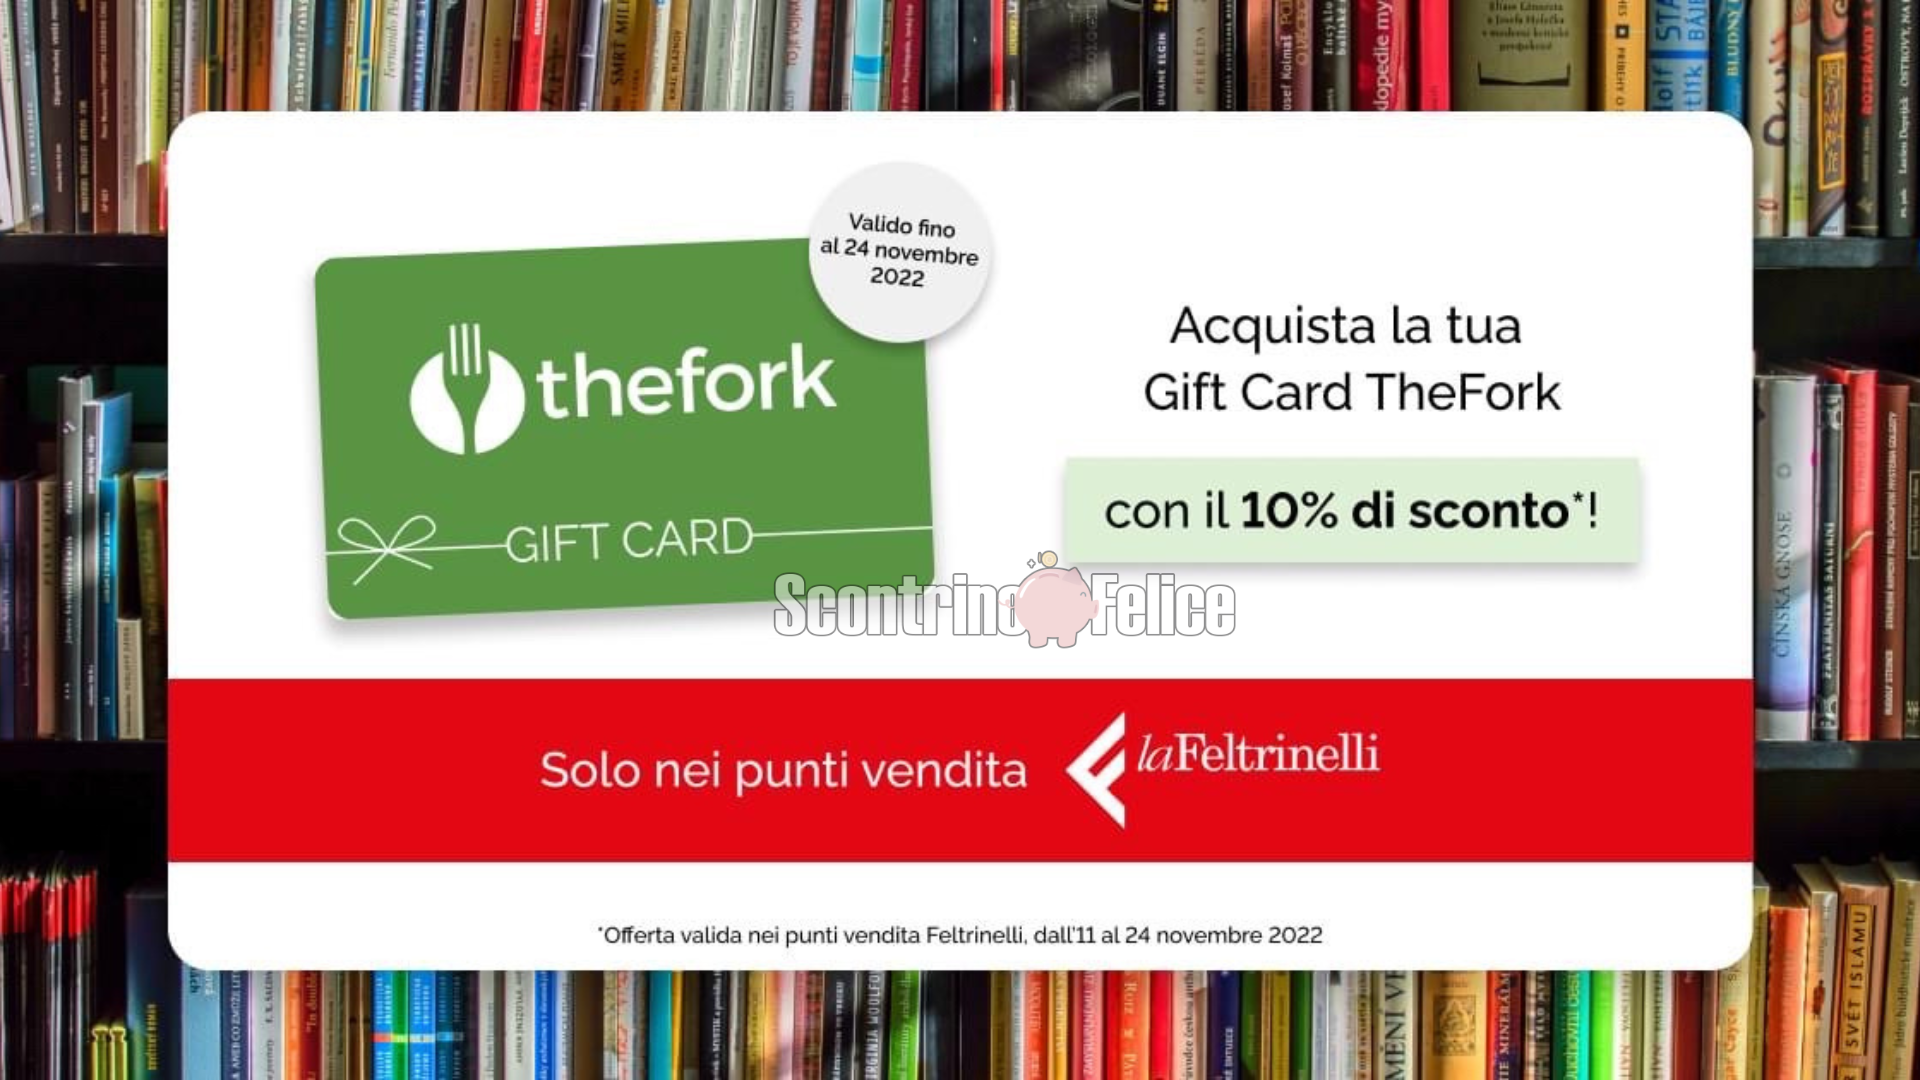 Gift Card TheFork scontate del 10% da LaFeltrinelli! 4